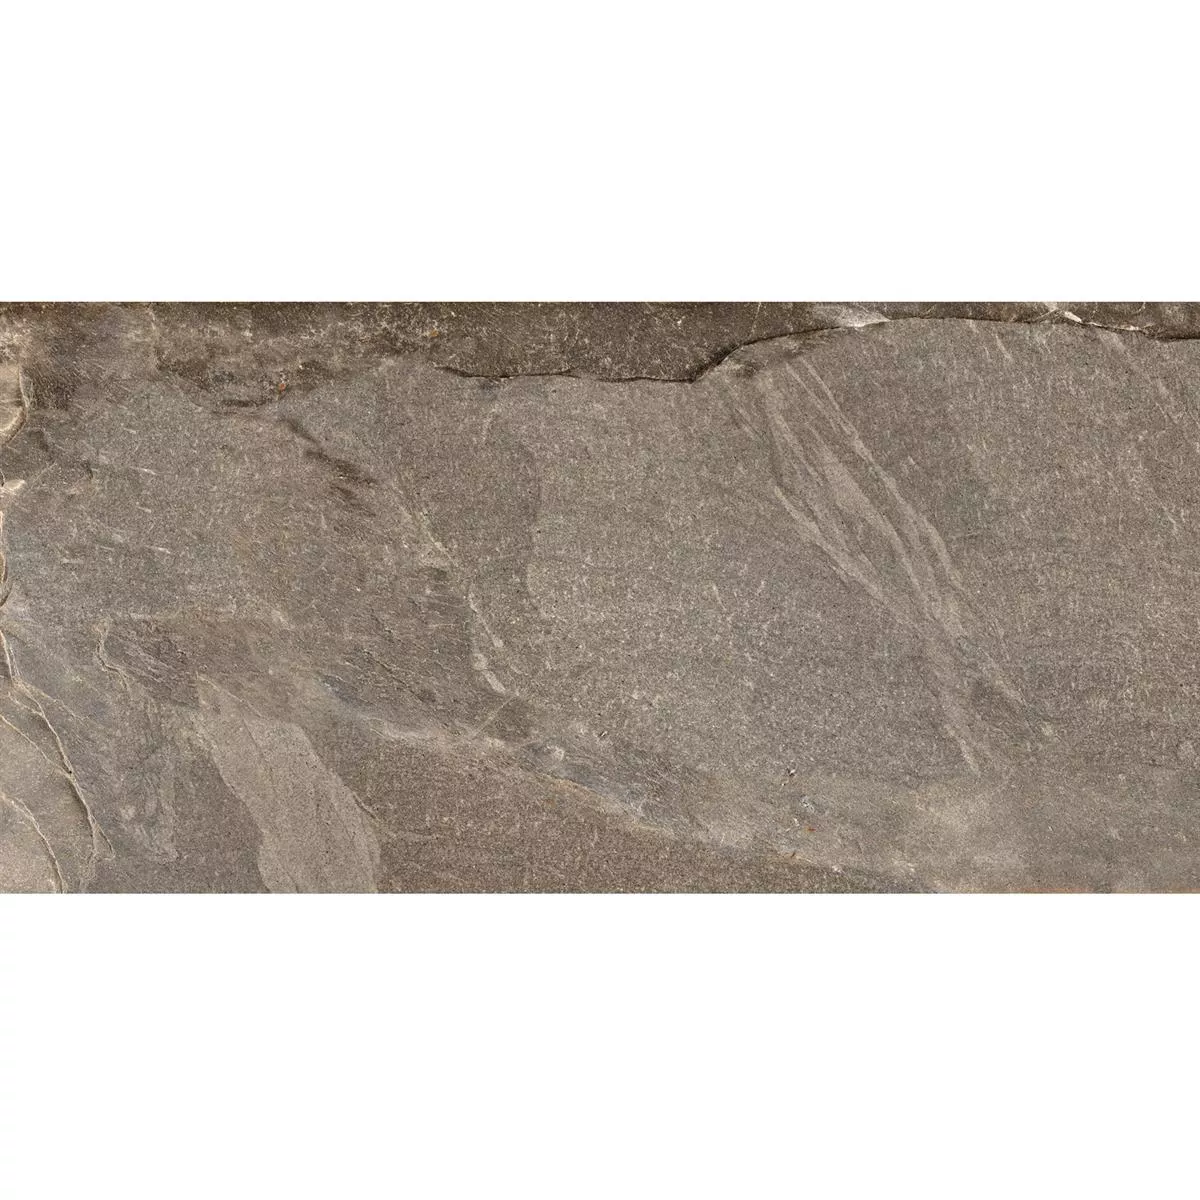 Sample Floor Tiles Homeland Natural Stone Optic R10 Bronze 30x60cm